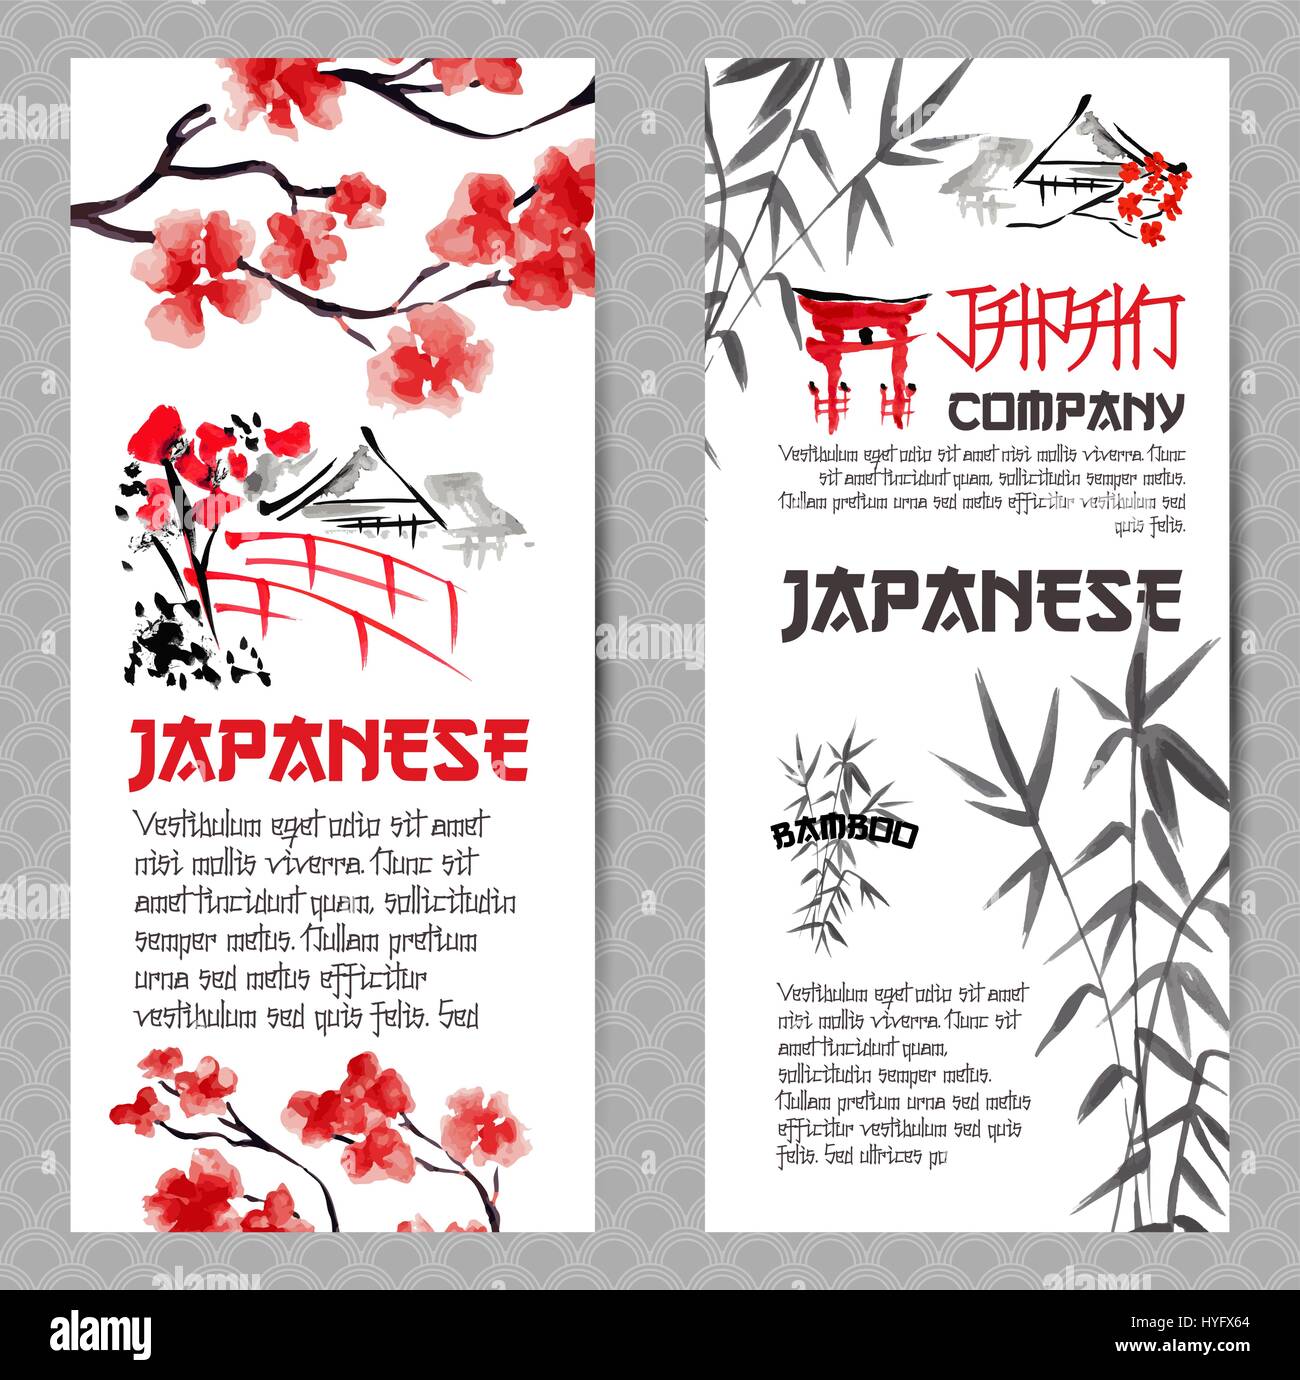 Vertikale Banner oder Flyer-Konzepte setzen. Japanische rote Kirsche Blume Zweig Blüte und Bambus-silhouette Stock Vektor